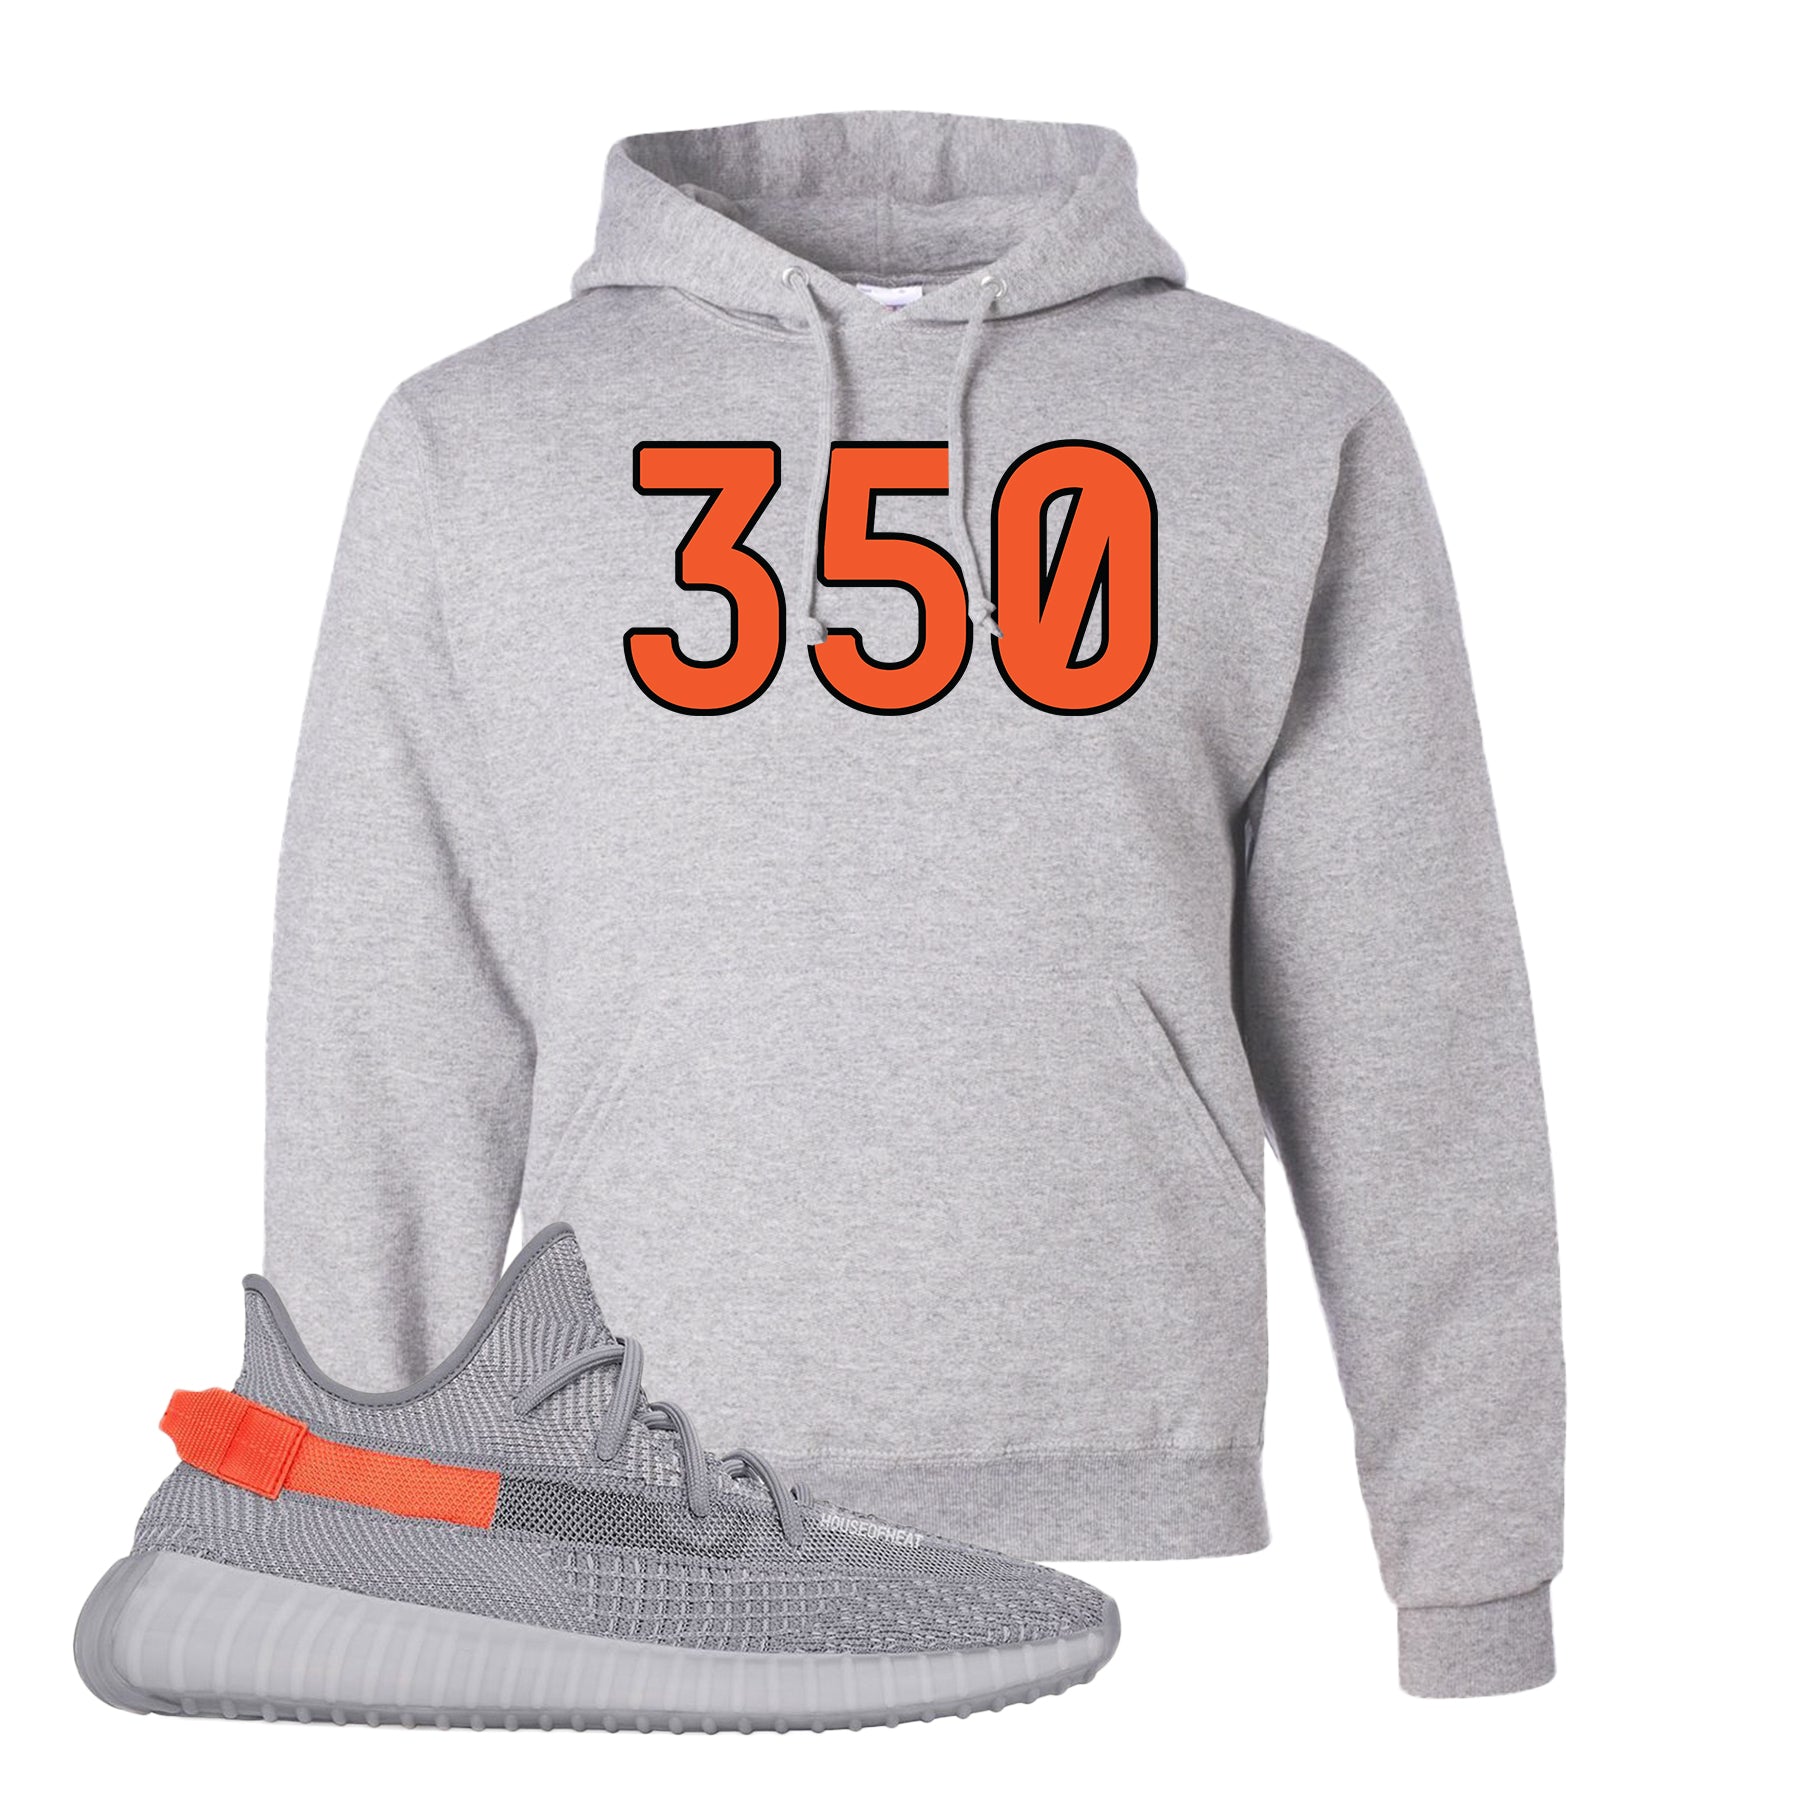 yeezy 350 hoodie